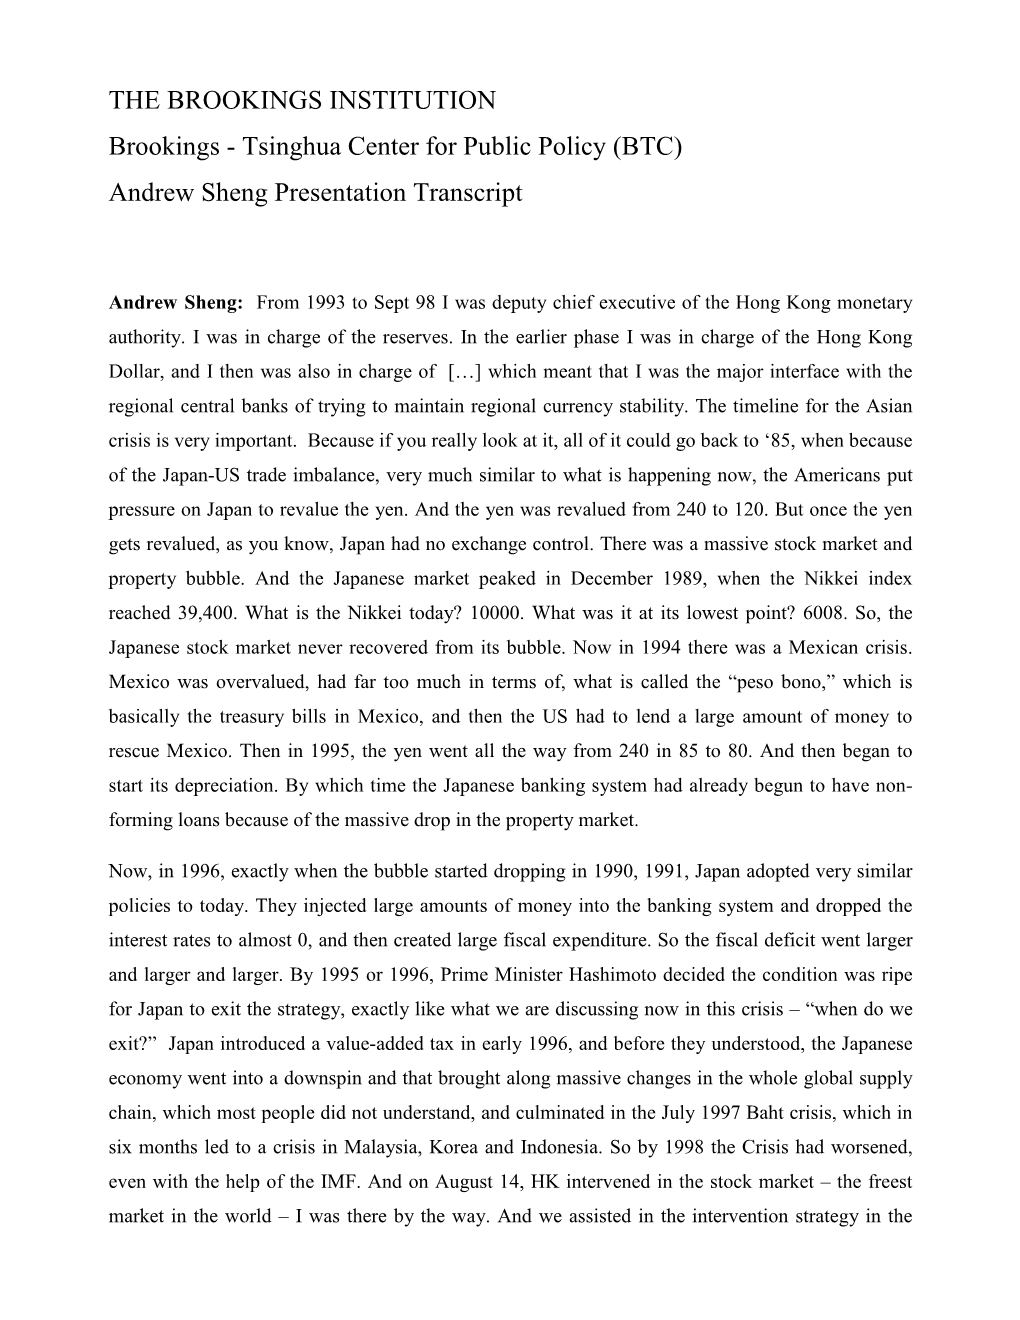 Andrew Sheng Transcript